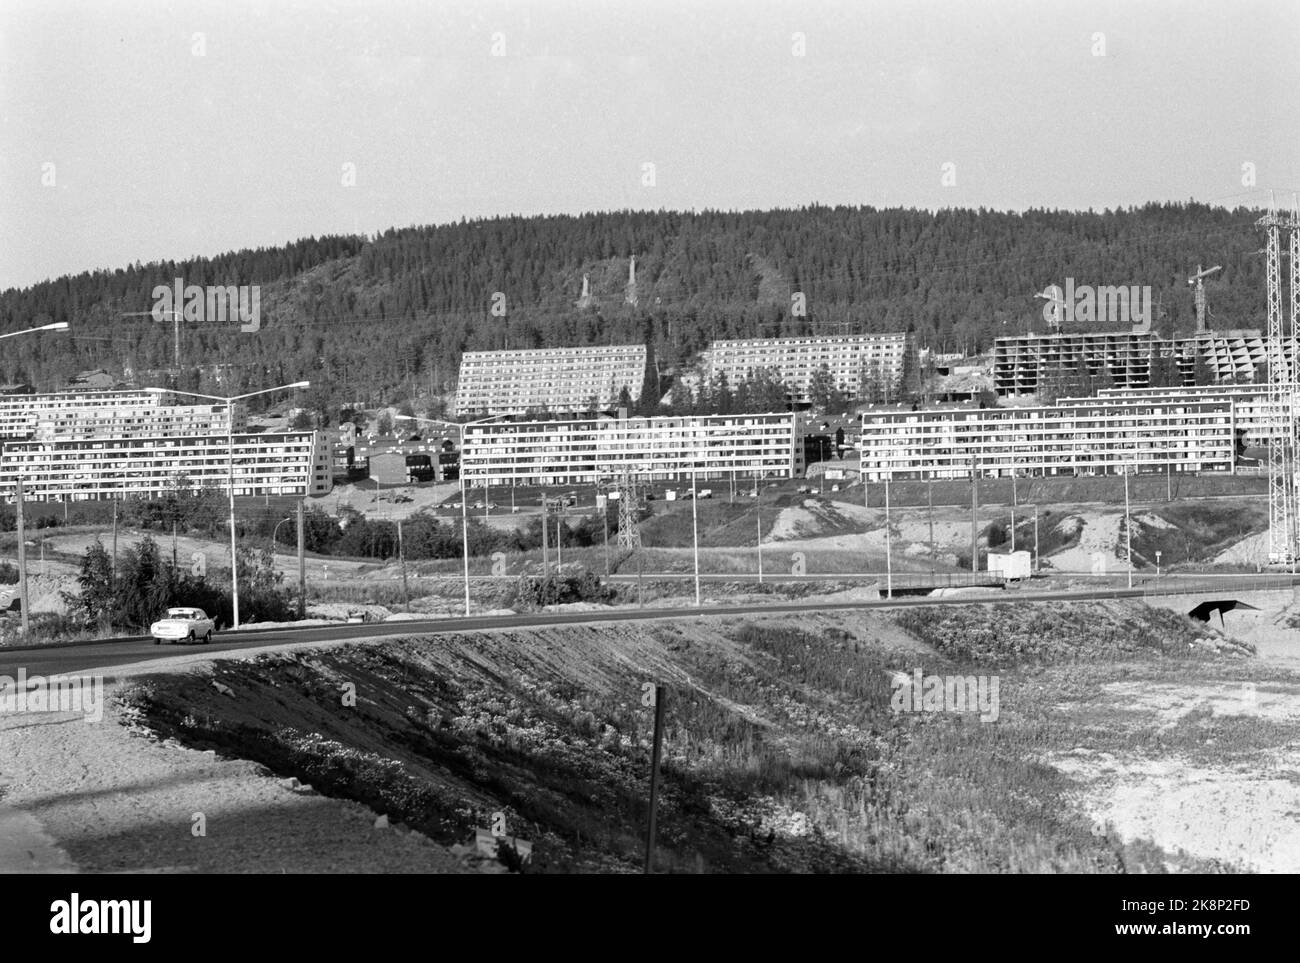 Stovner, Oslo, 19710904. Développement du logement à Stovner à Oslo. Grand développement de Stovner vers la fin de 1960s et le début de 1970s. Les blocs de terrasse caractéristiques caractérisent le stock de logement. Notez les grues de construction dans la zone. Photo: Ivar Aaserud / courant / NTB Banque D'Images